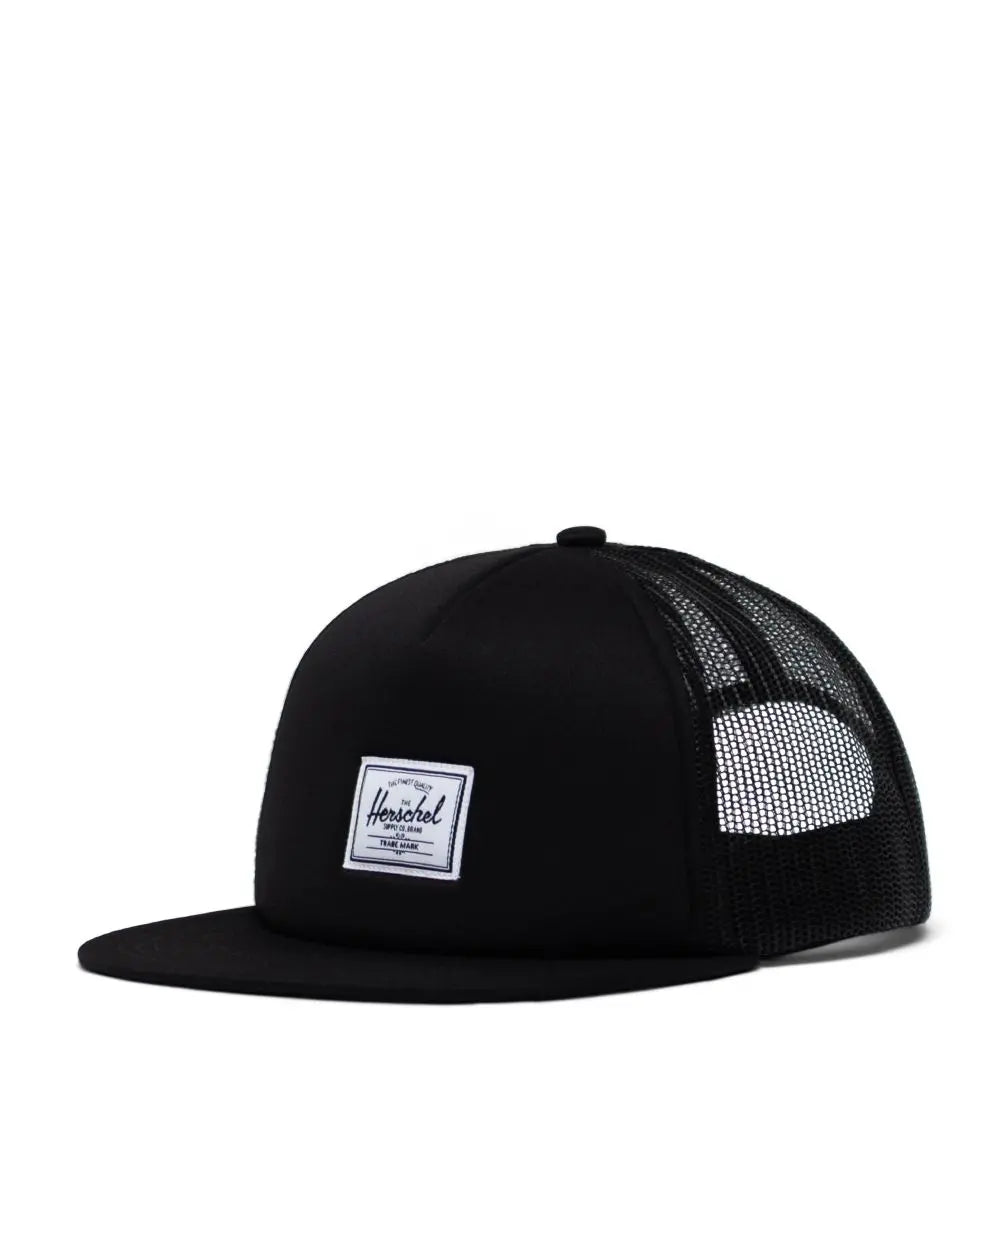 HERSCHEL Whaler Mesh Classic Hat Black Classic Label Men's Hats Herschel Supply Company 